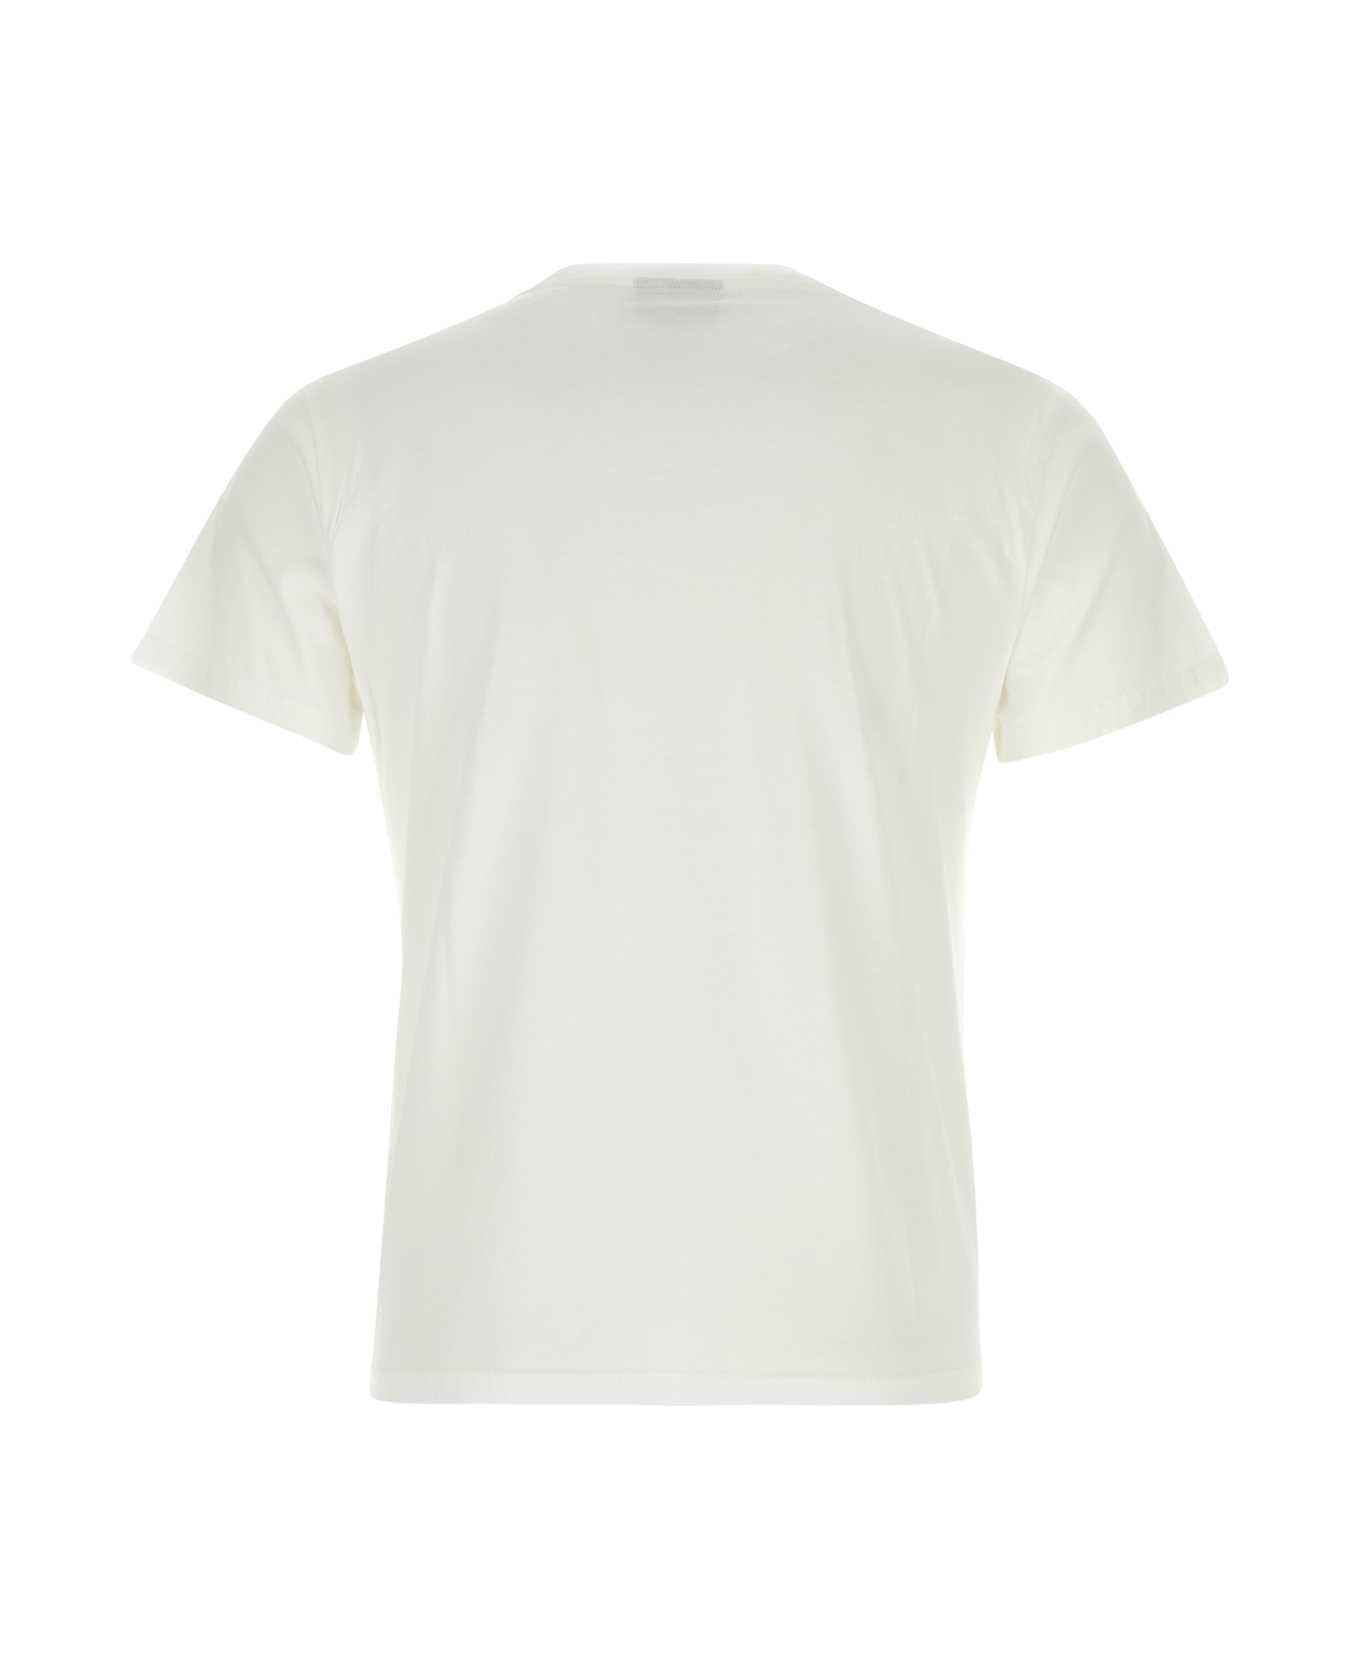 Botter White Cotton T-shirt - WHITECARIBNBE Tシャツ